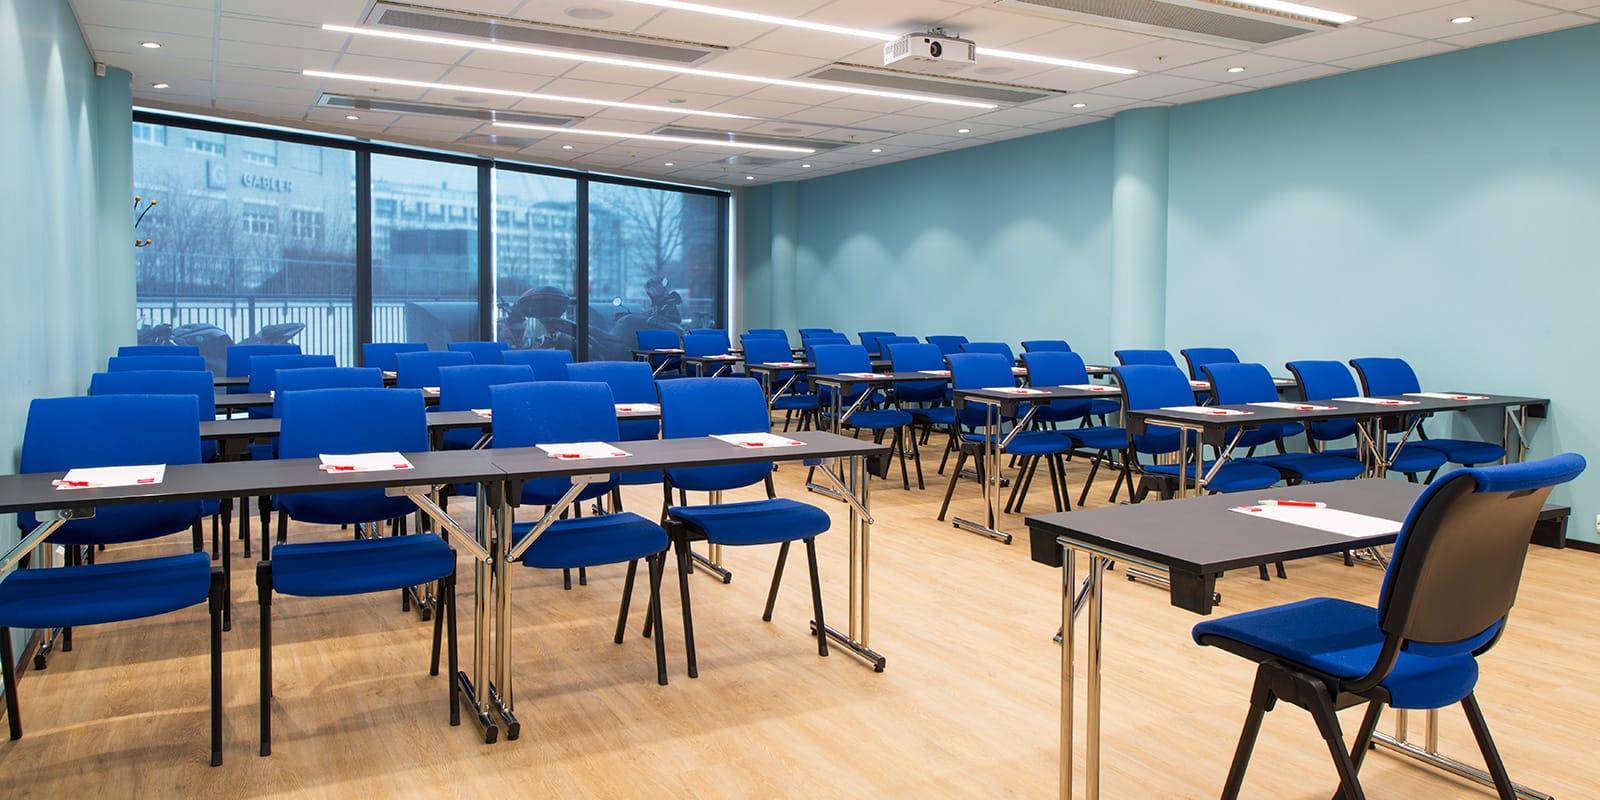 konferensrum holmenkollen, klassrumsmöblering, 40 platser, stolsrader med fyra stolar i varje rad, fönster i rummets bakre del, ledarstol längst fram